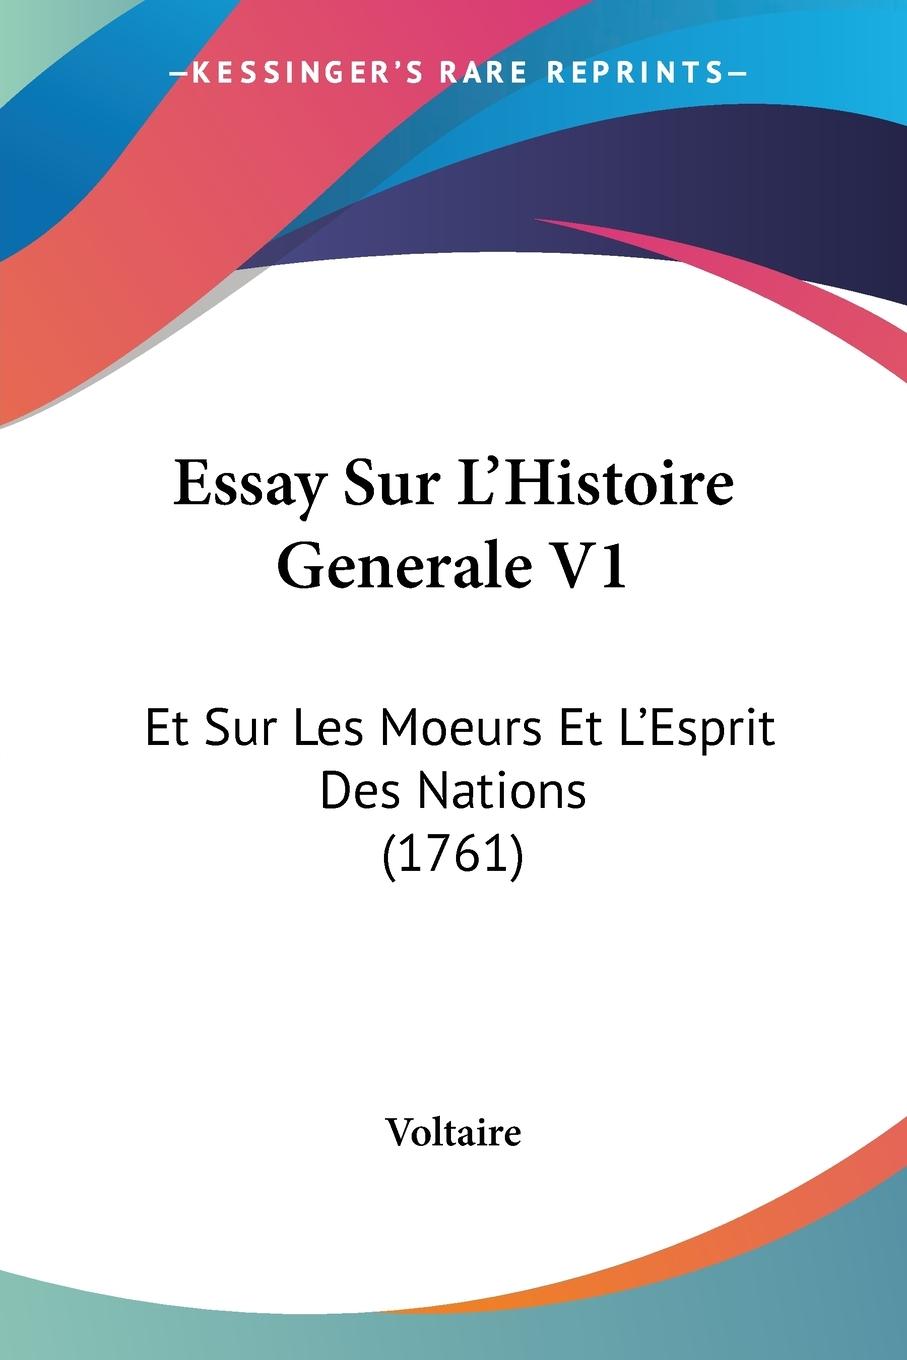 Essay Sur L Histoire Generale V1 - Voltaire